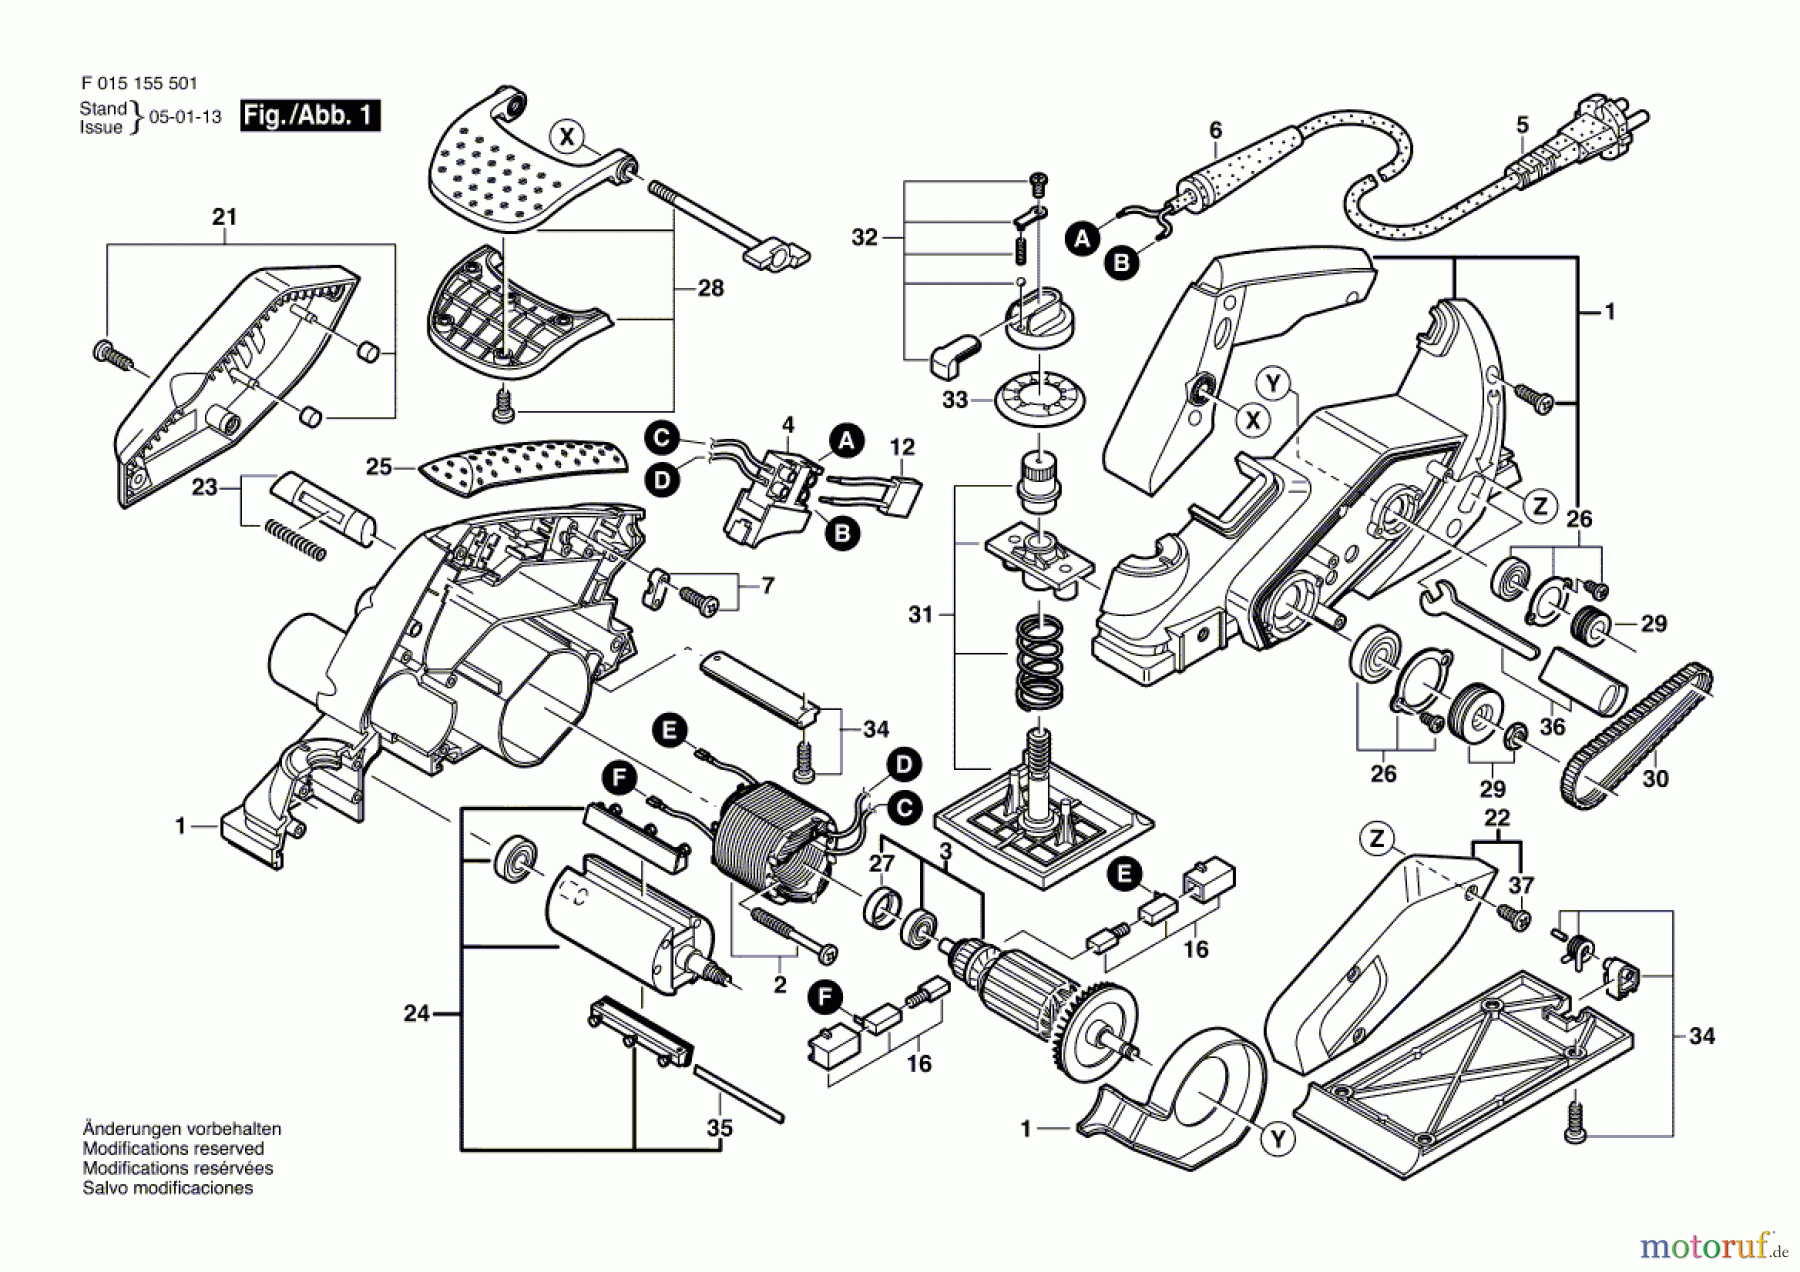  Bosch Werkzeug Handhobel 1560 Seite 1